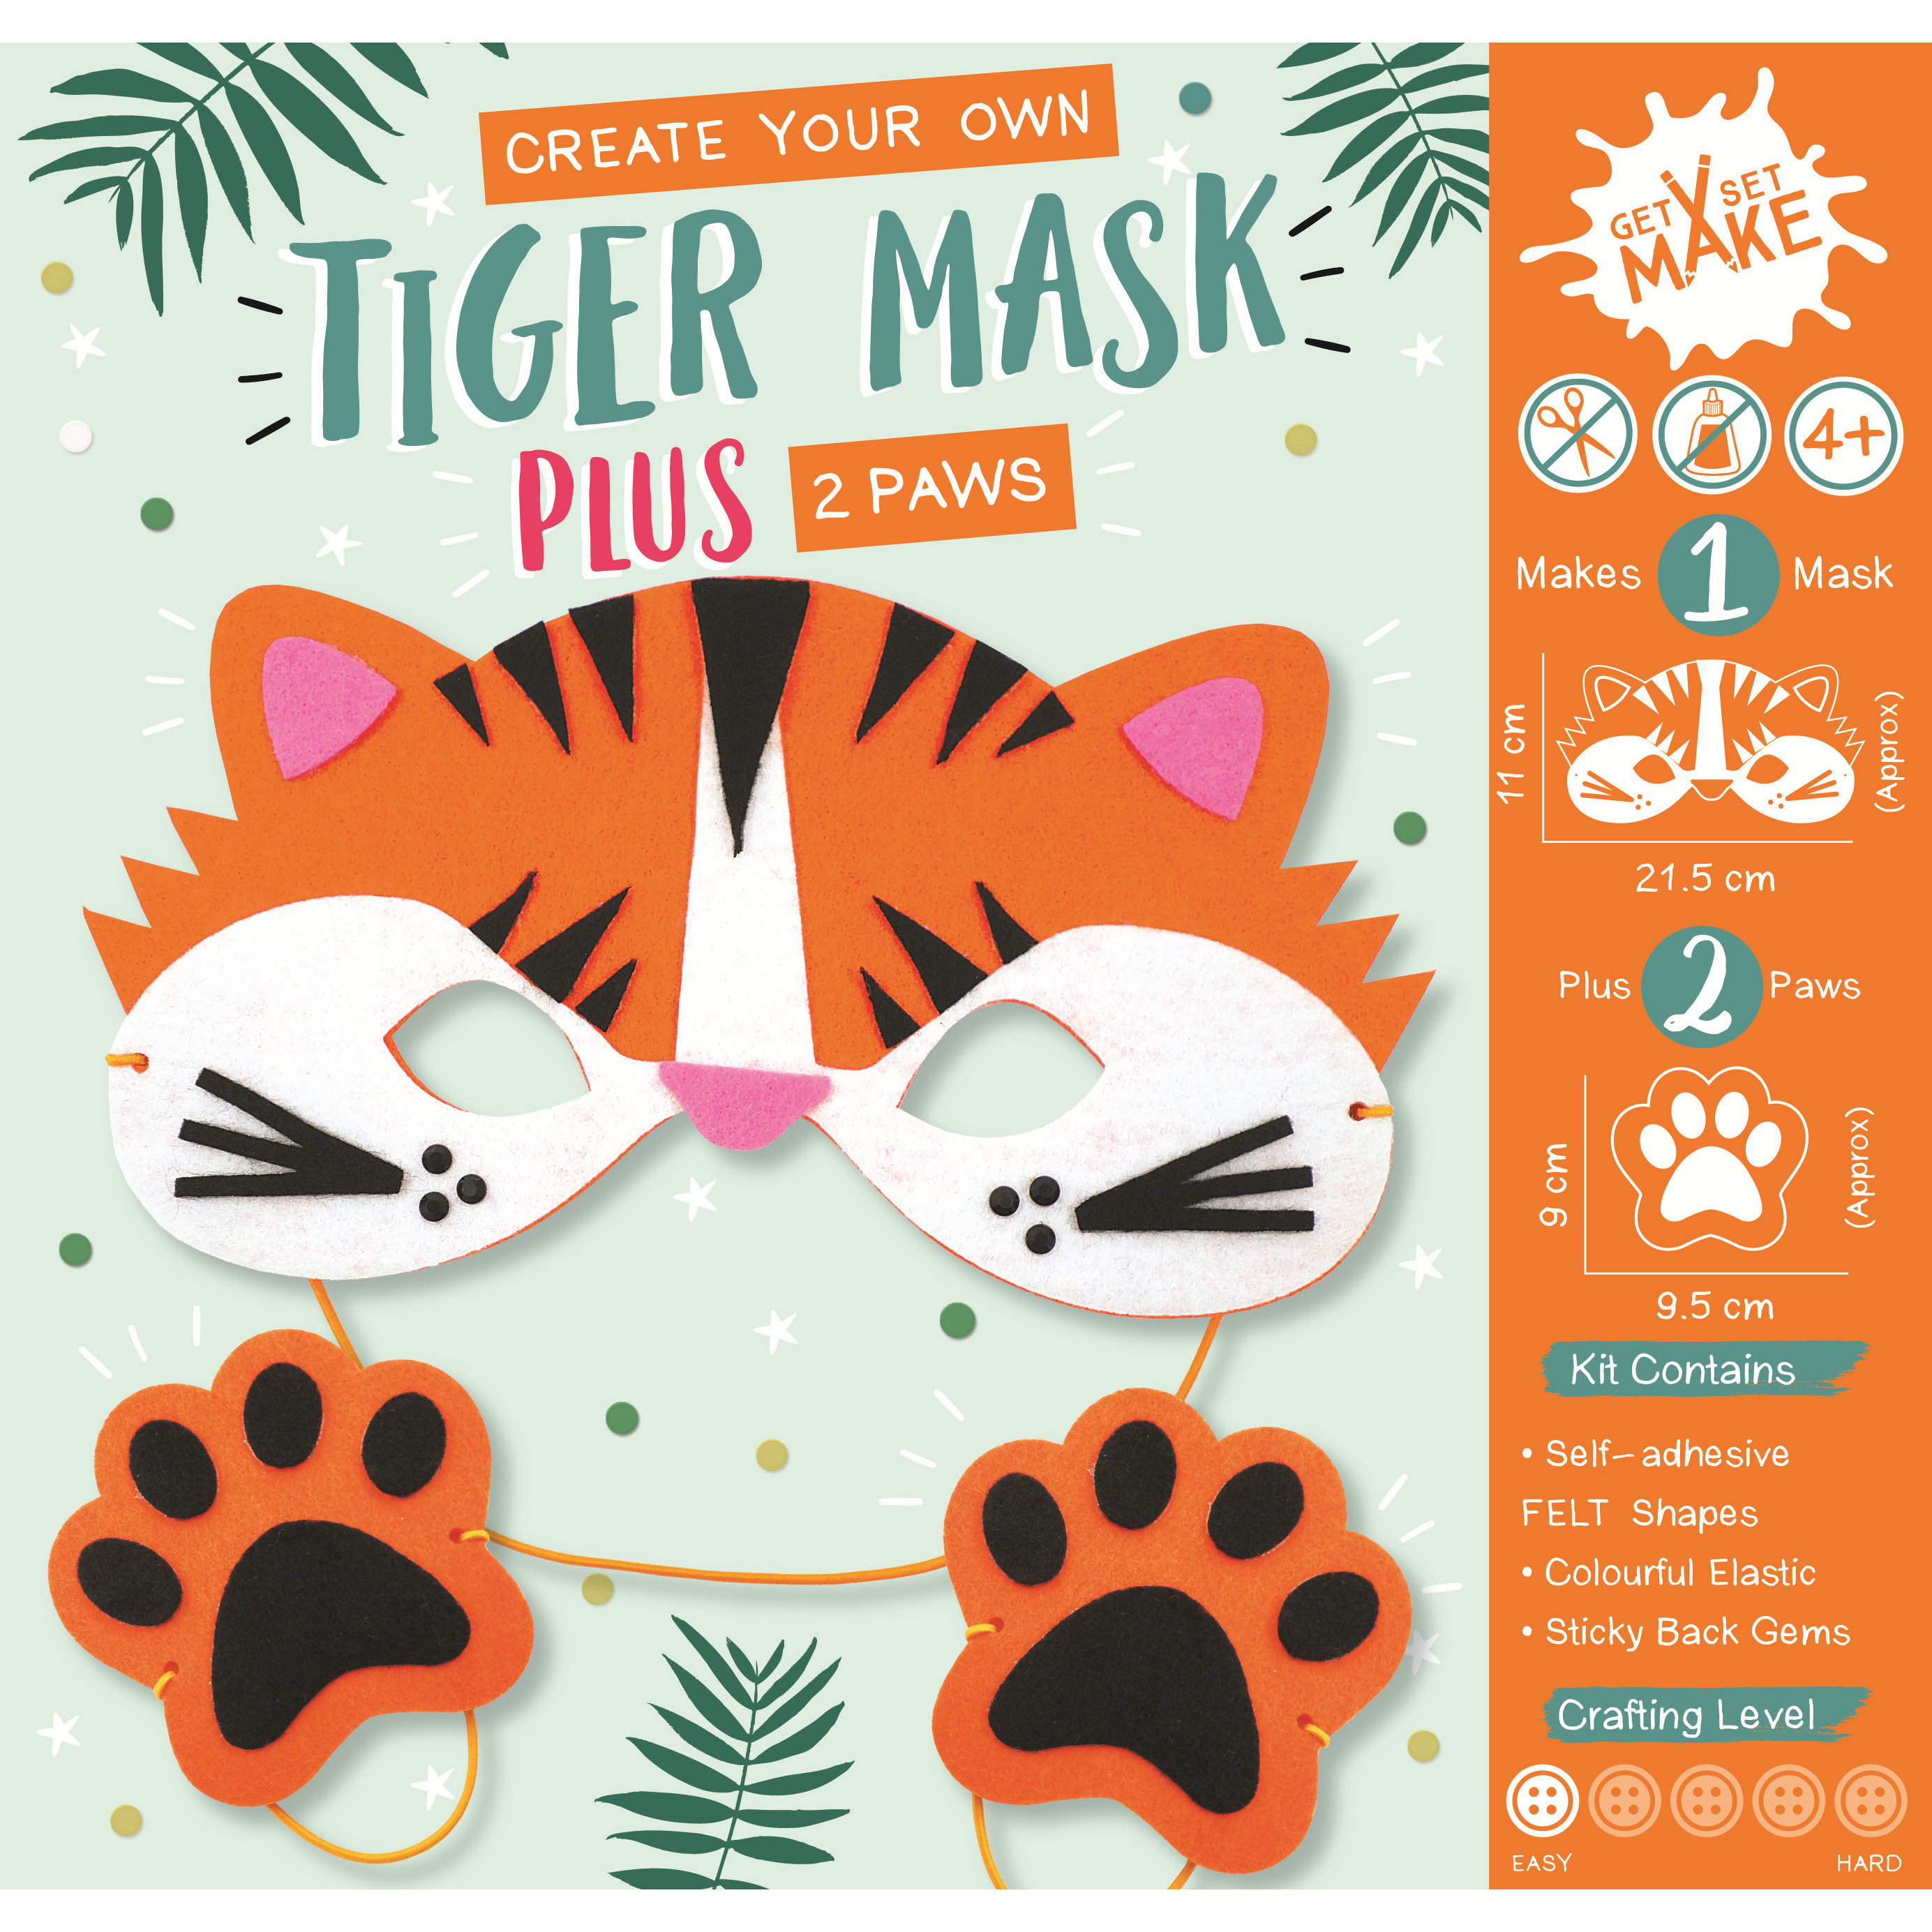 Get Set Make Create Your Own Tiger Mask Felt Kids Craft Kits